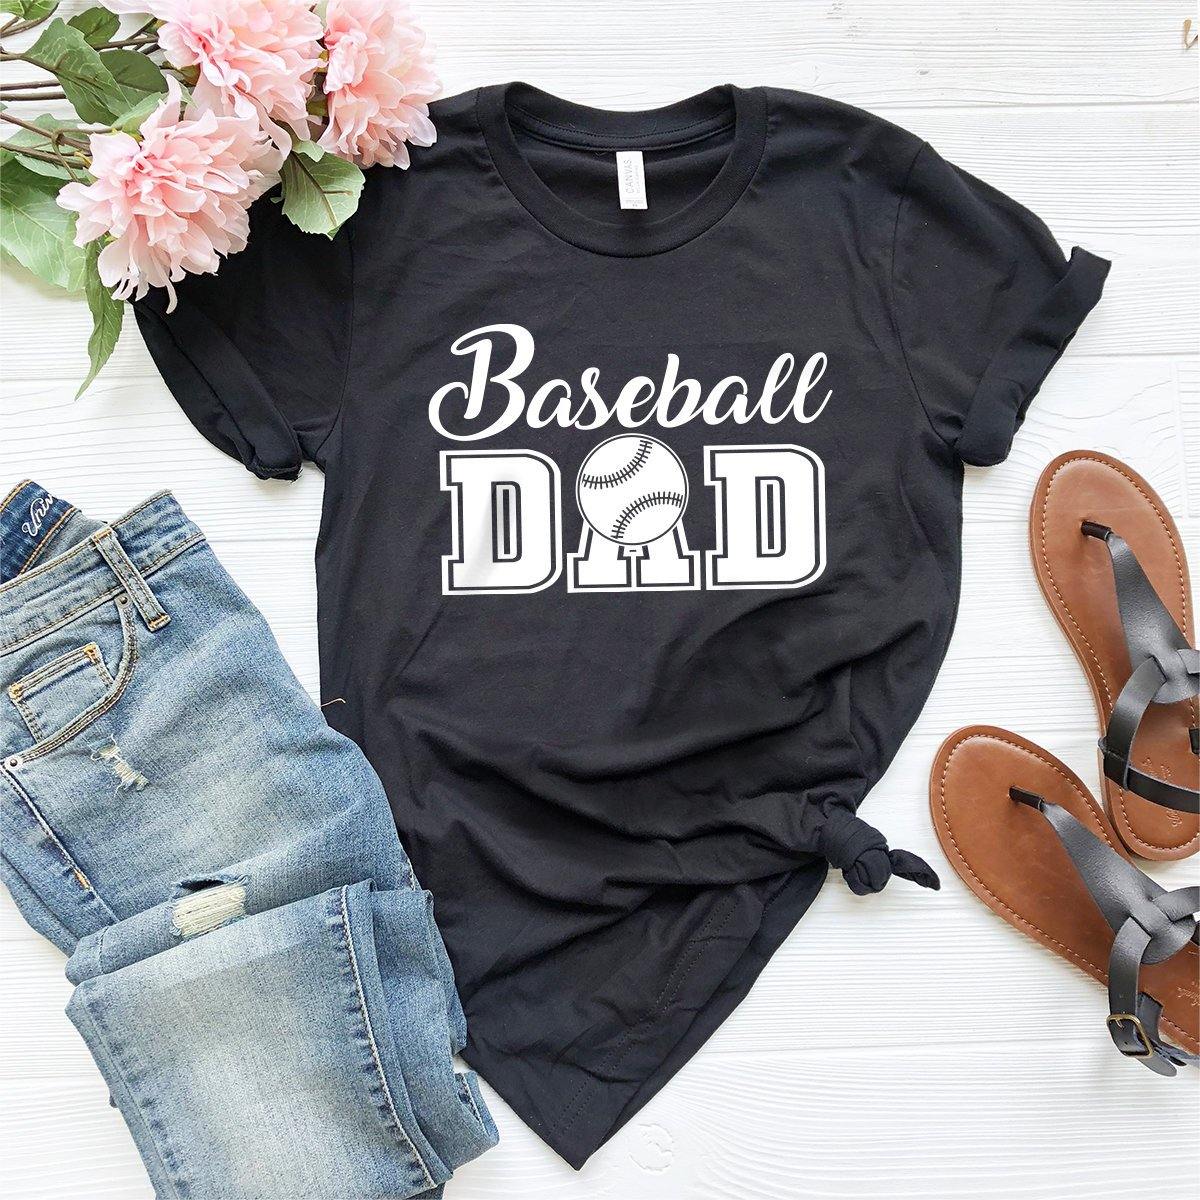 Baseball Shirt, Baseball Mom Tee, Softball Shirt, Softball Mom T Shirt, Stressed Blessed and Baseball Obsessed T-Shirt, Baseball Fan Shirt